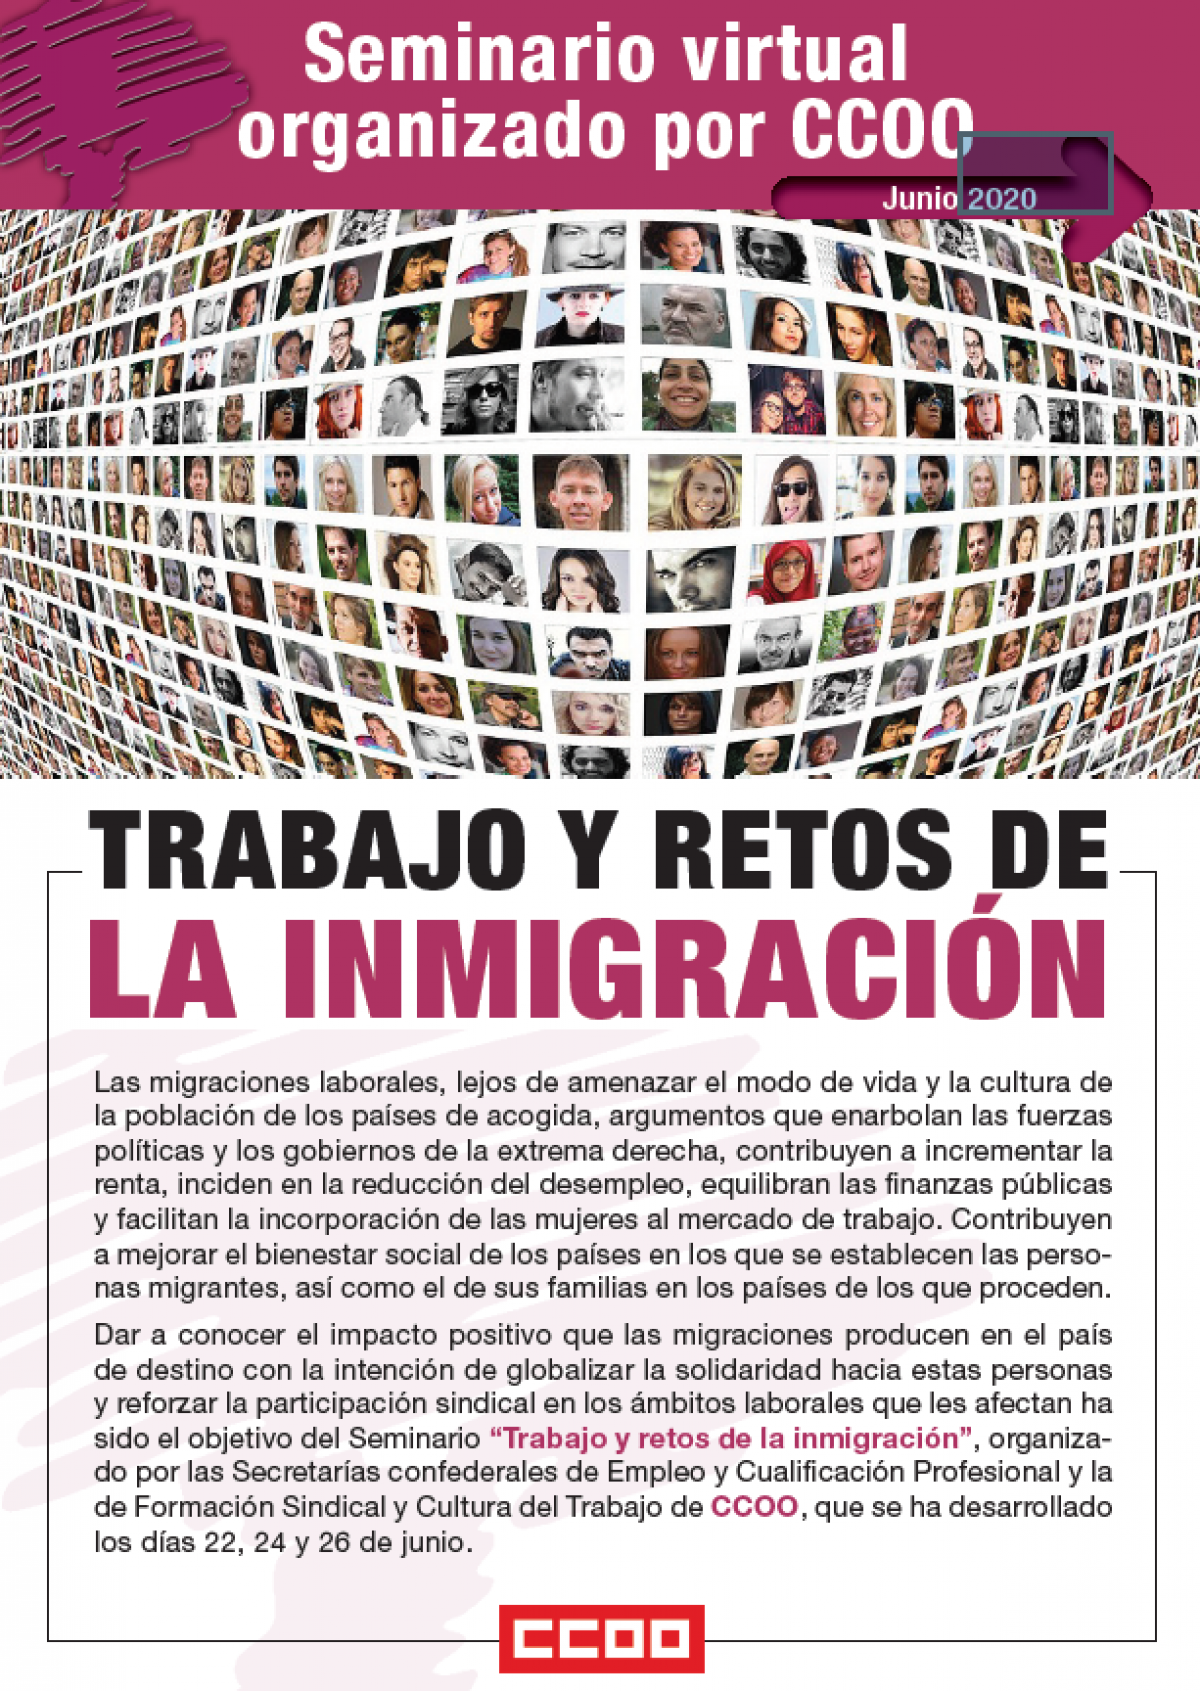 Seminario CCOO "Trabajo y retos de la inmigración"